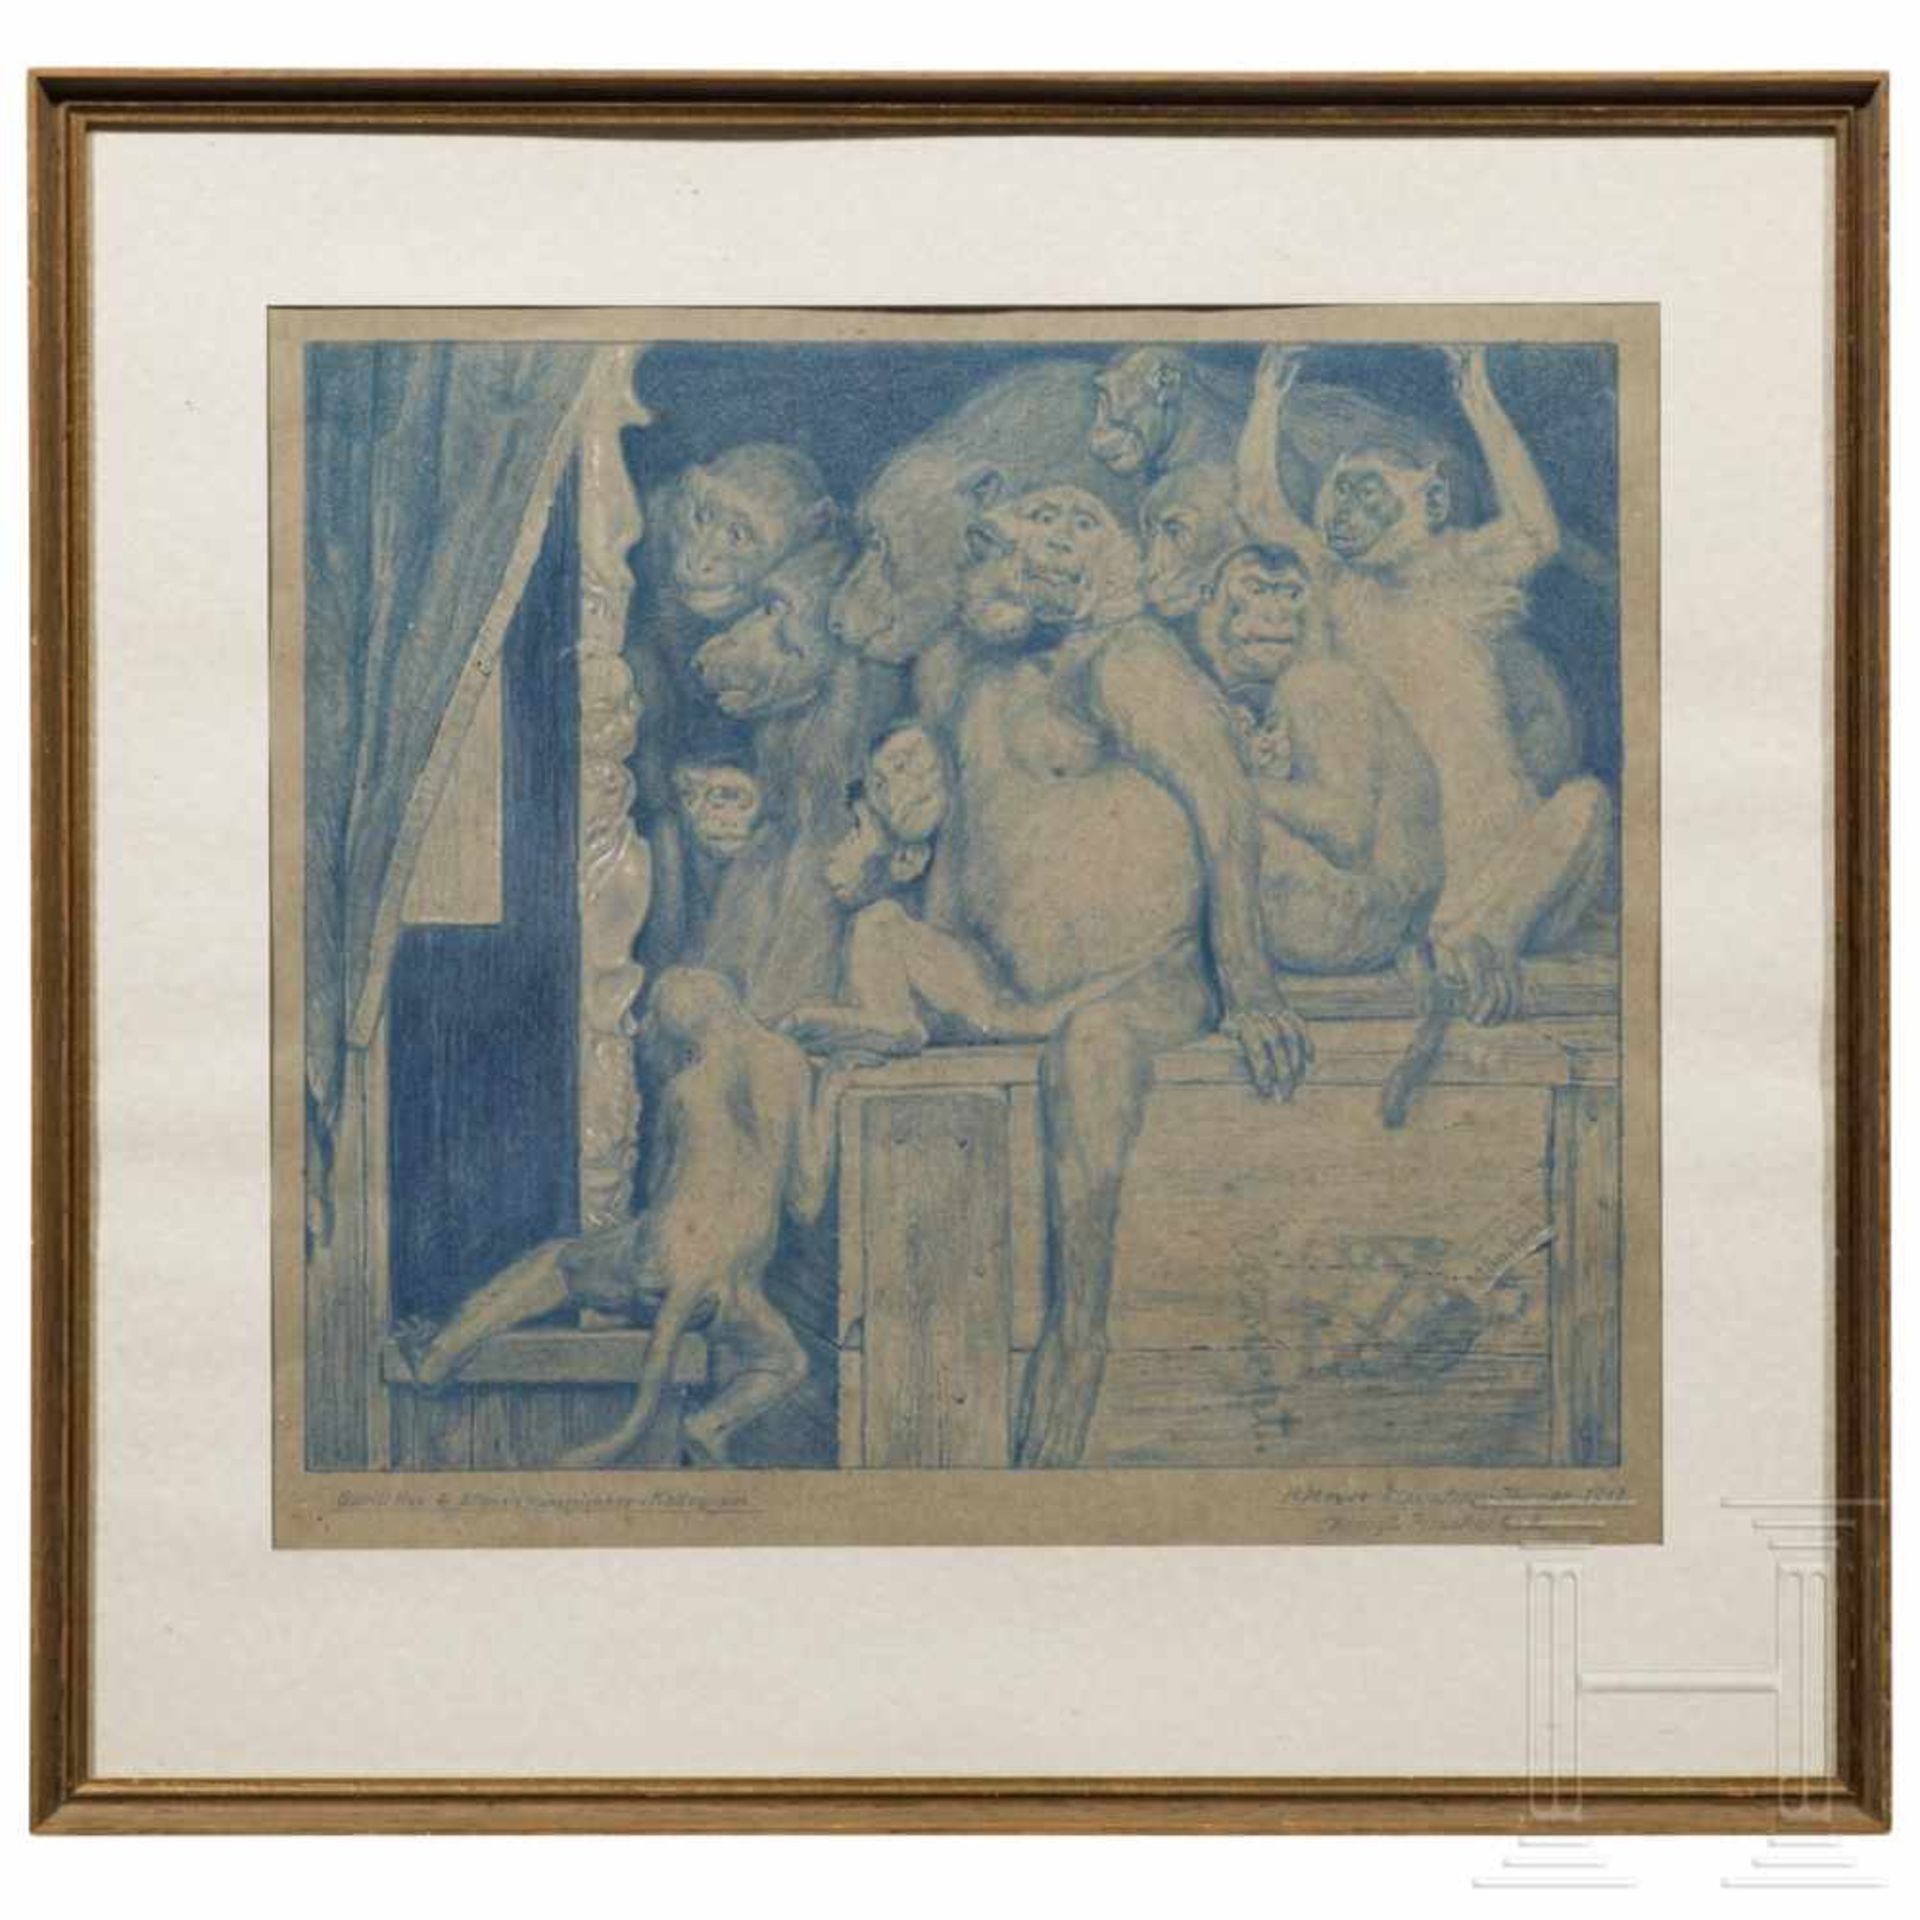 "Affen als Kunstrichter", nach Gabriel von Max, München, datiert 1913